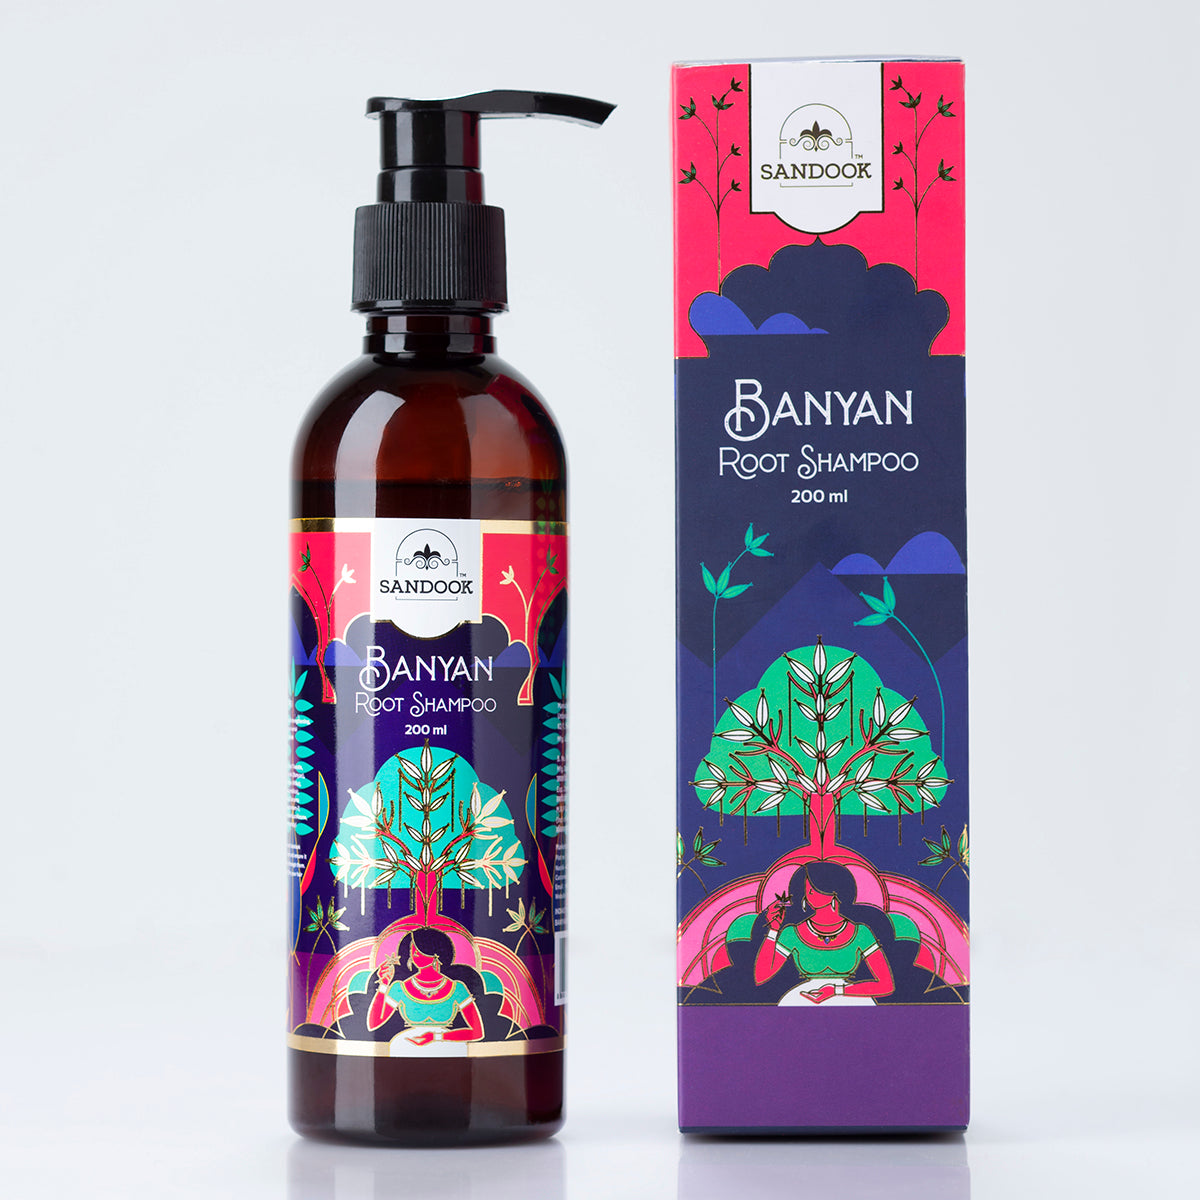 Sandook Banyan Root Shampoo